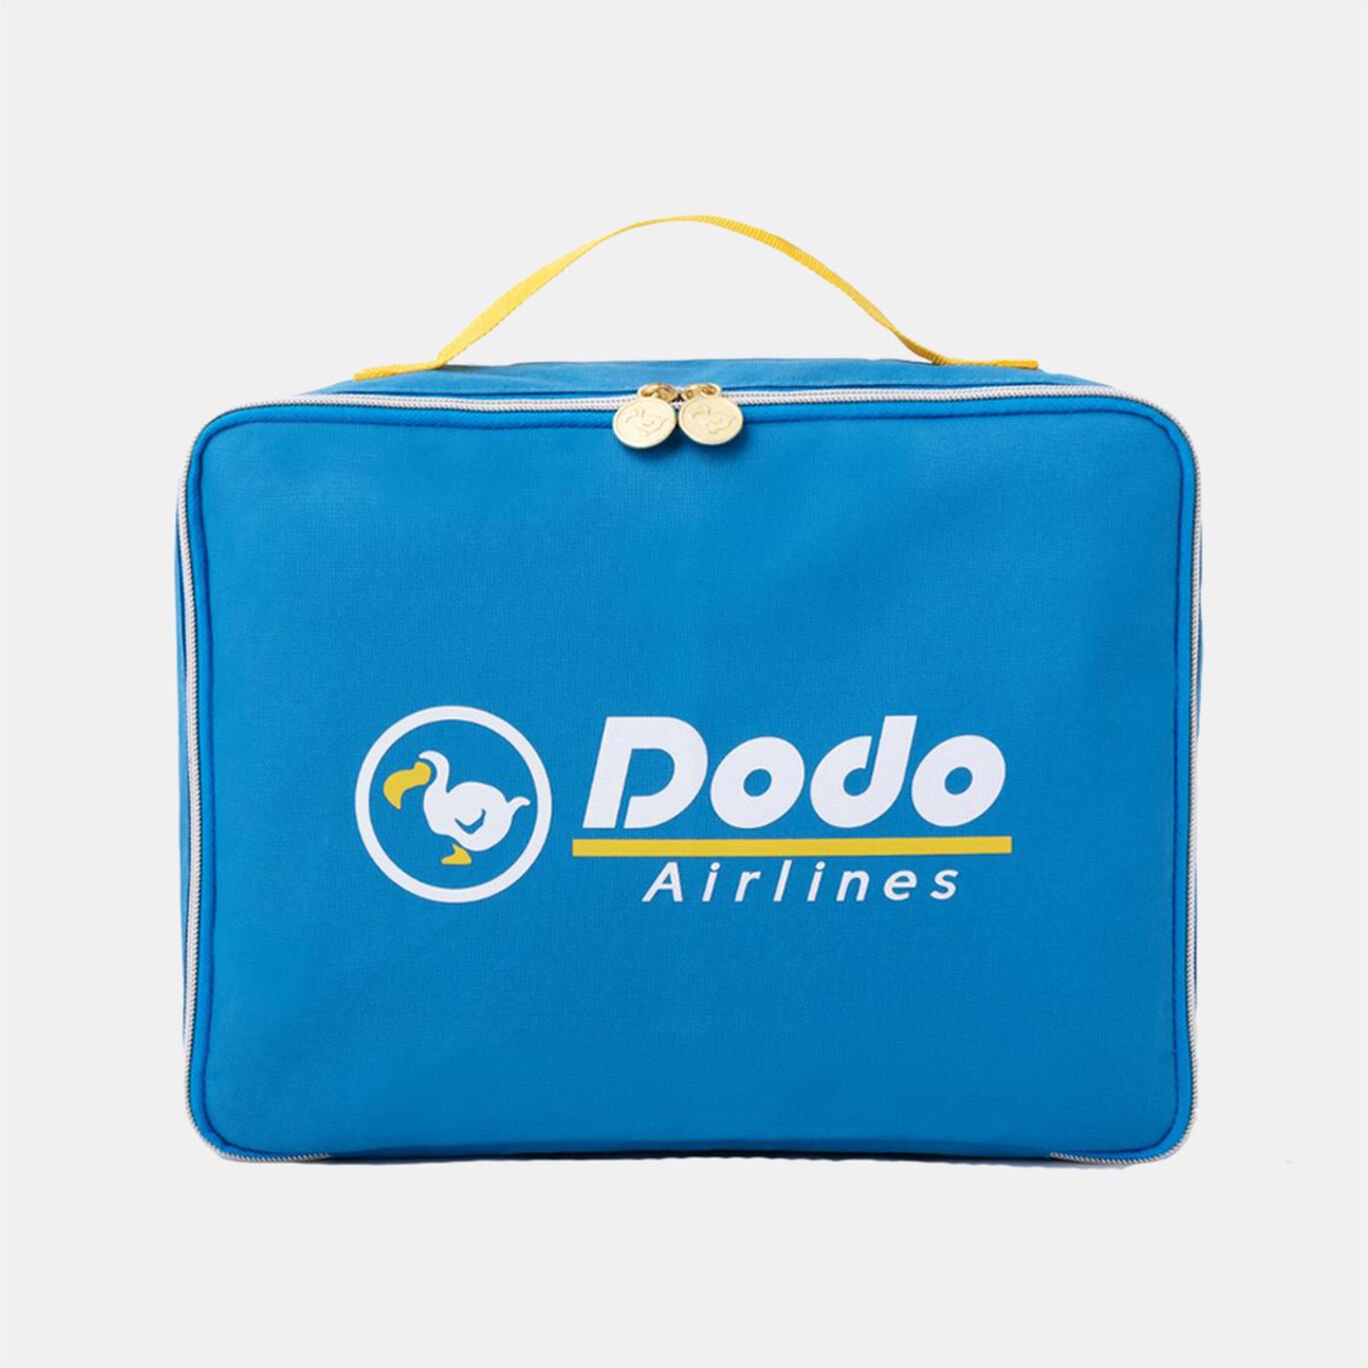 あつまれ どうぶつの森 Dodo Airlines BIGトラベルポーチBOOK